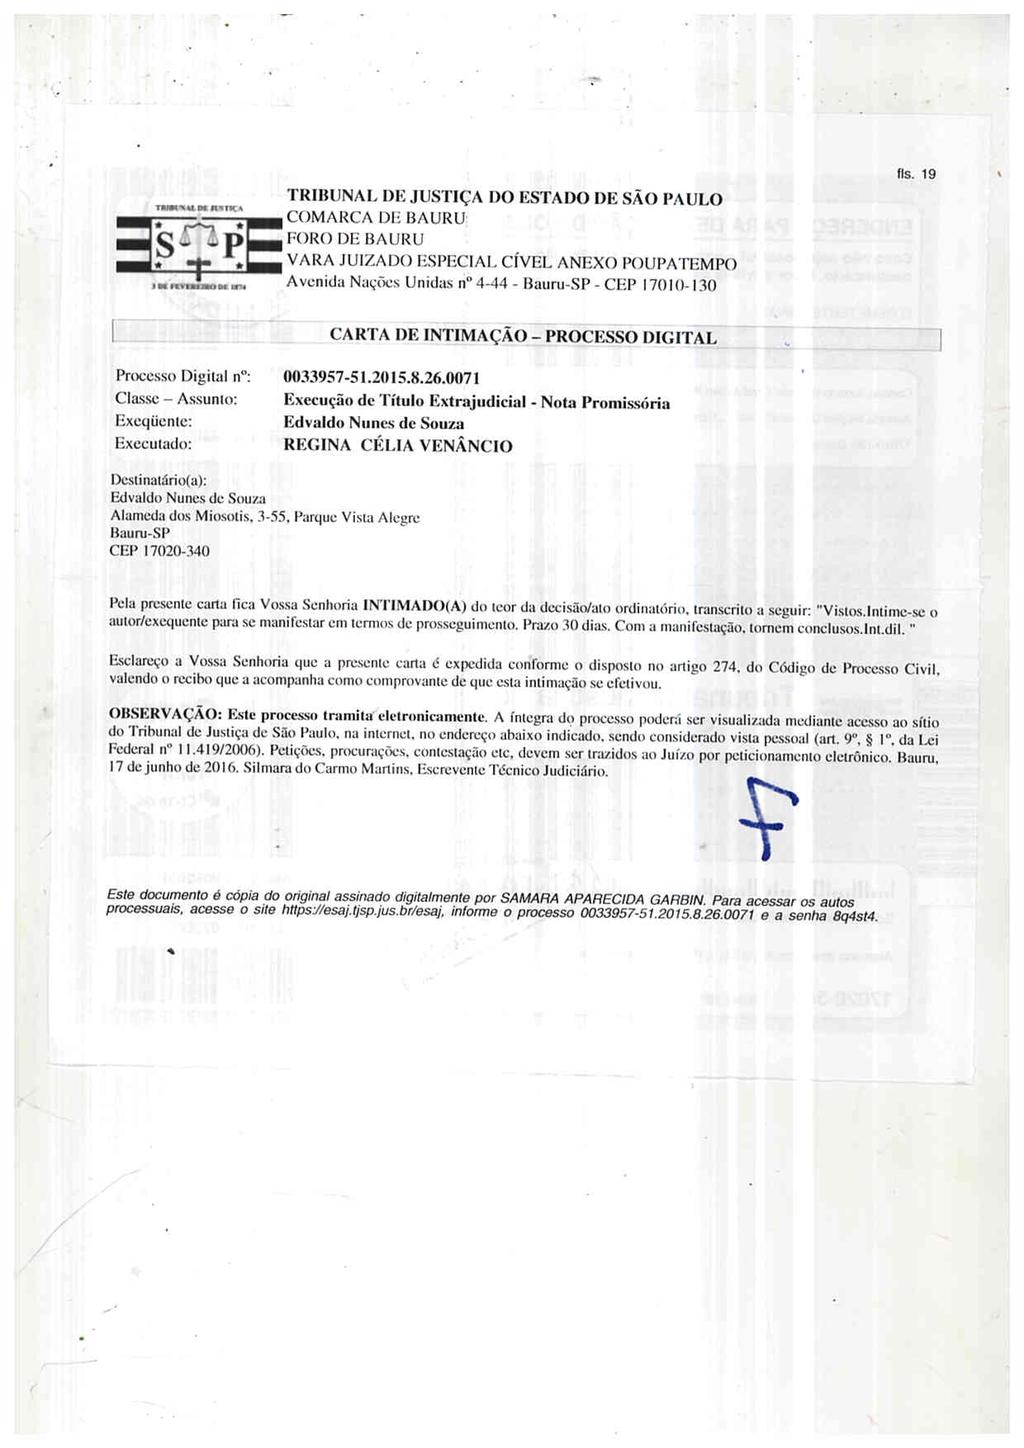 fls. 26 Este documento é cópia do original, assinado digitalmente por FABIO HENRIQUE FELIPE, liberado nos autos em 26/07/2016 às 09:05.